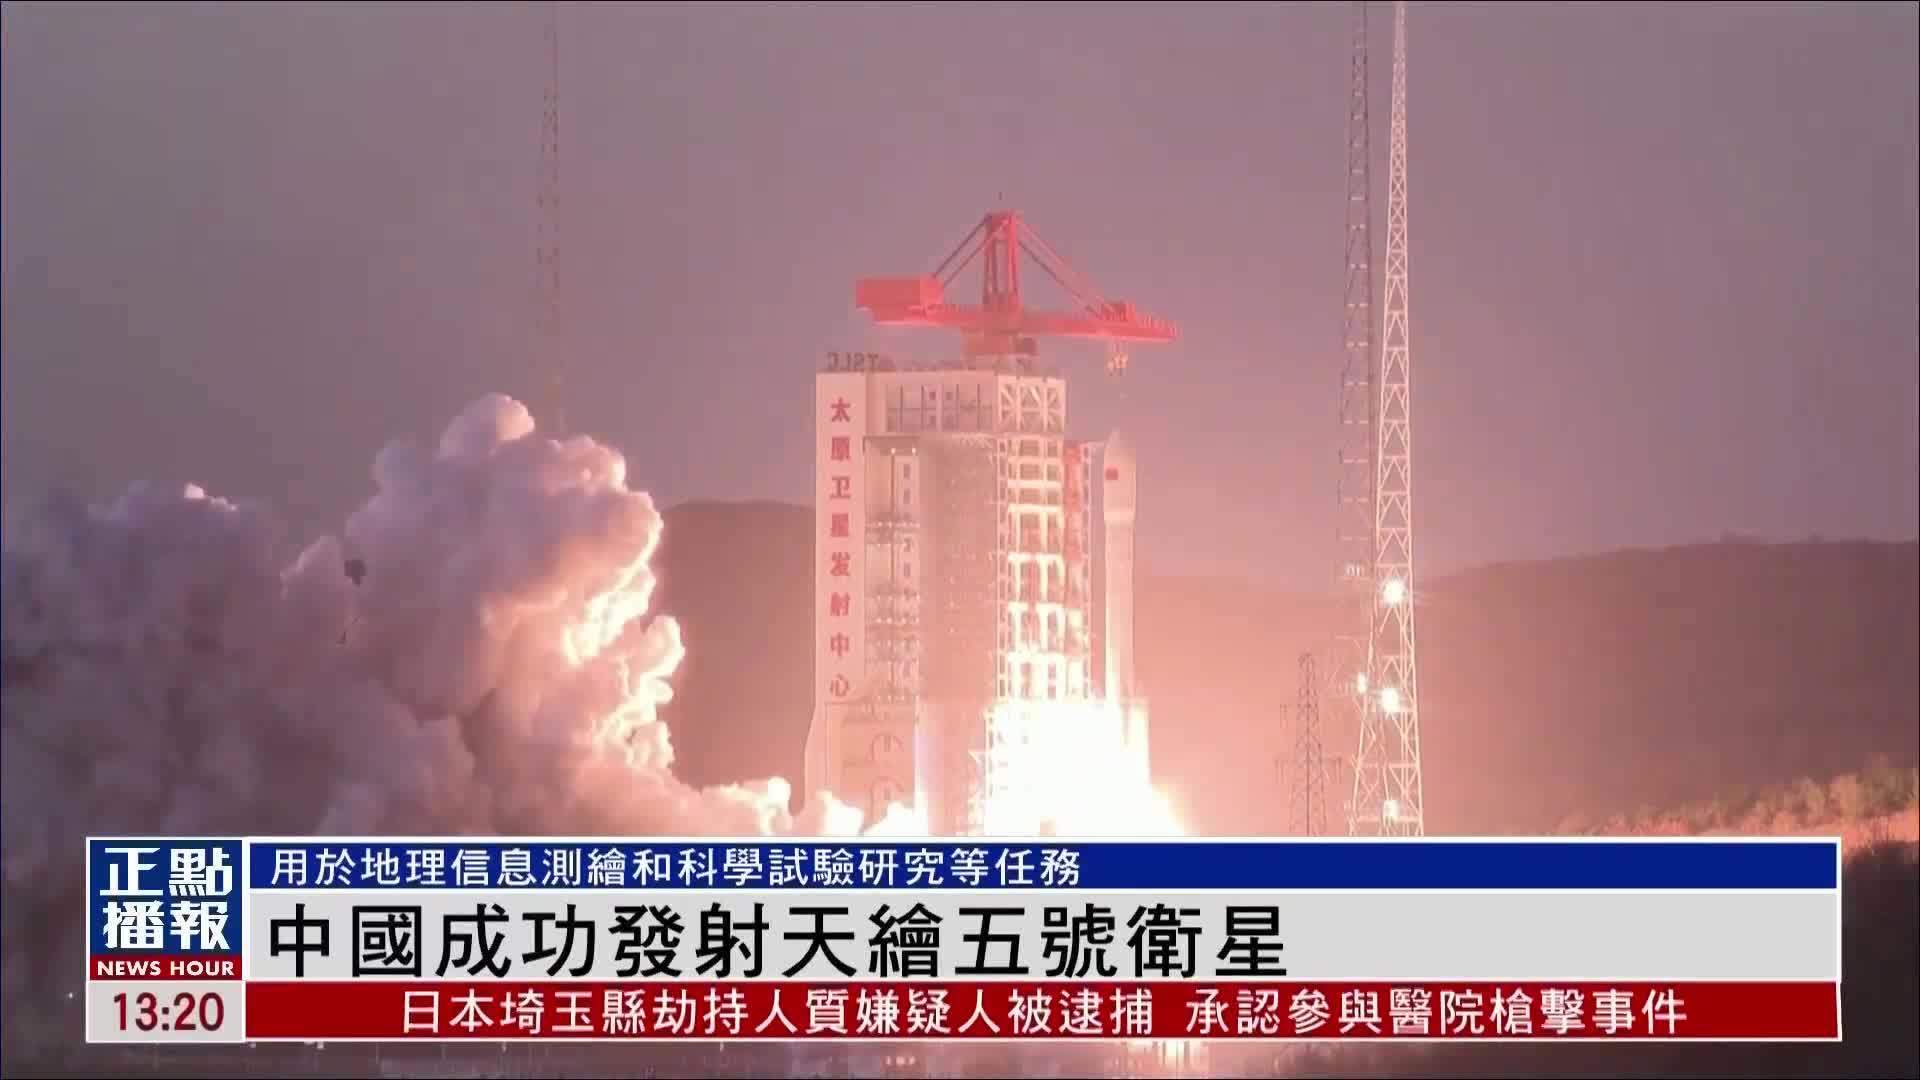 中国成功发射天绘五号卫星